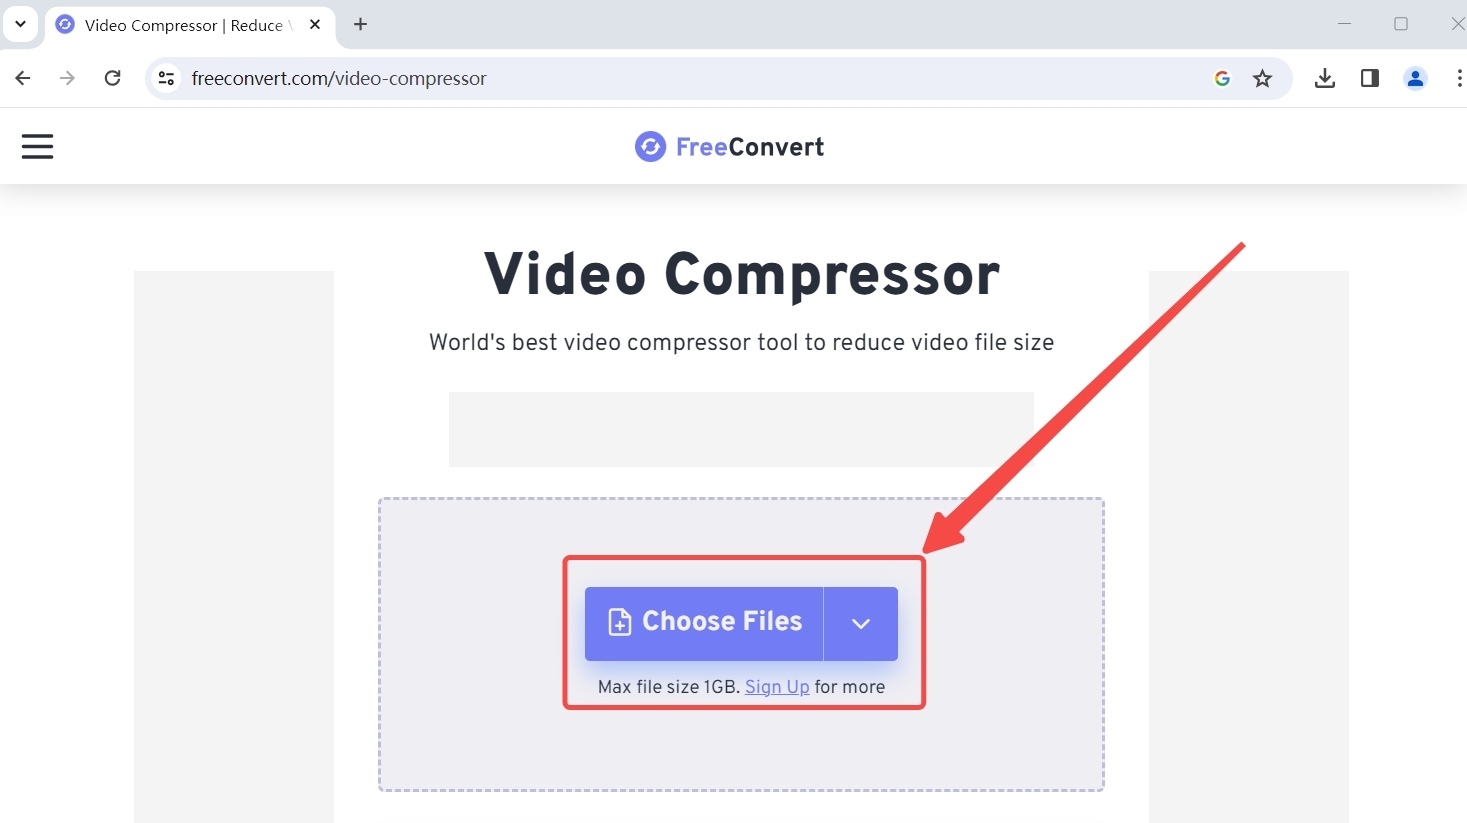 Laden Sie Dateien in FreeConvert Video Compressor hoch